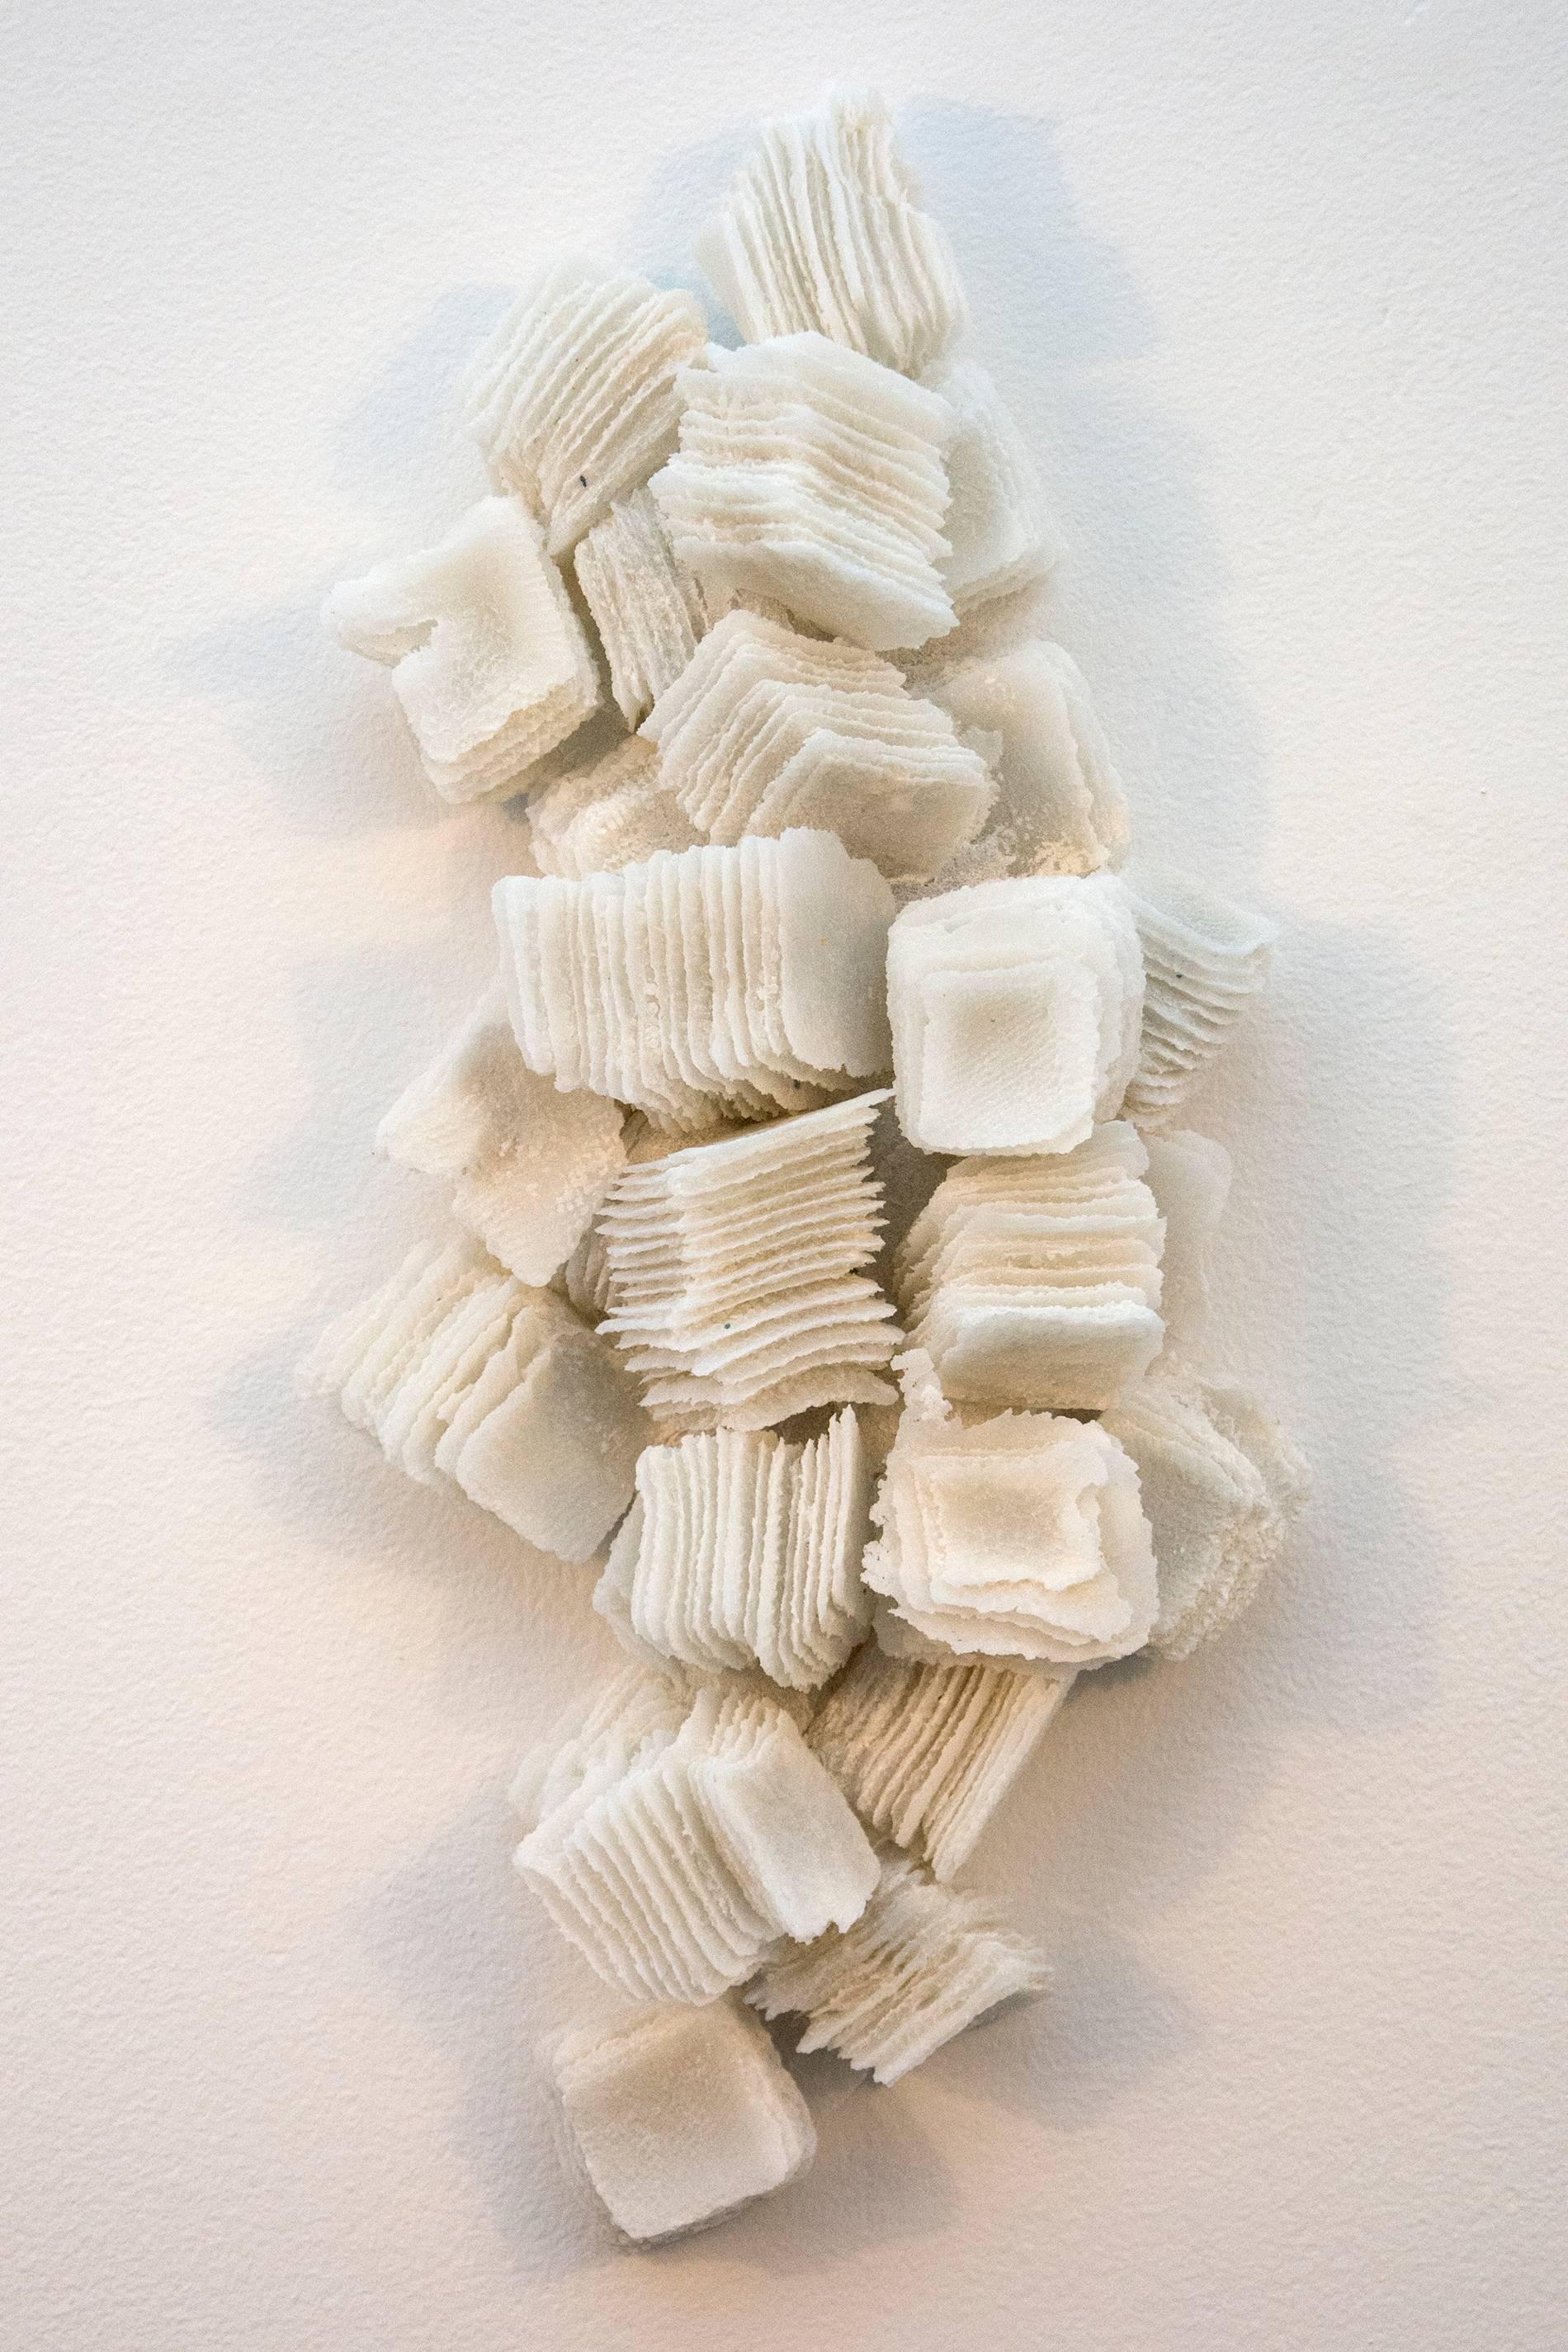 Cheryl Wilson Smith Abstract Sculpture – Ice Ridge No 3 – dynamisches, strukturiertes, weißes Wandrelief aus Glas